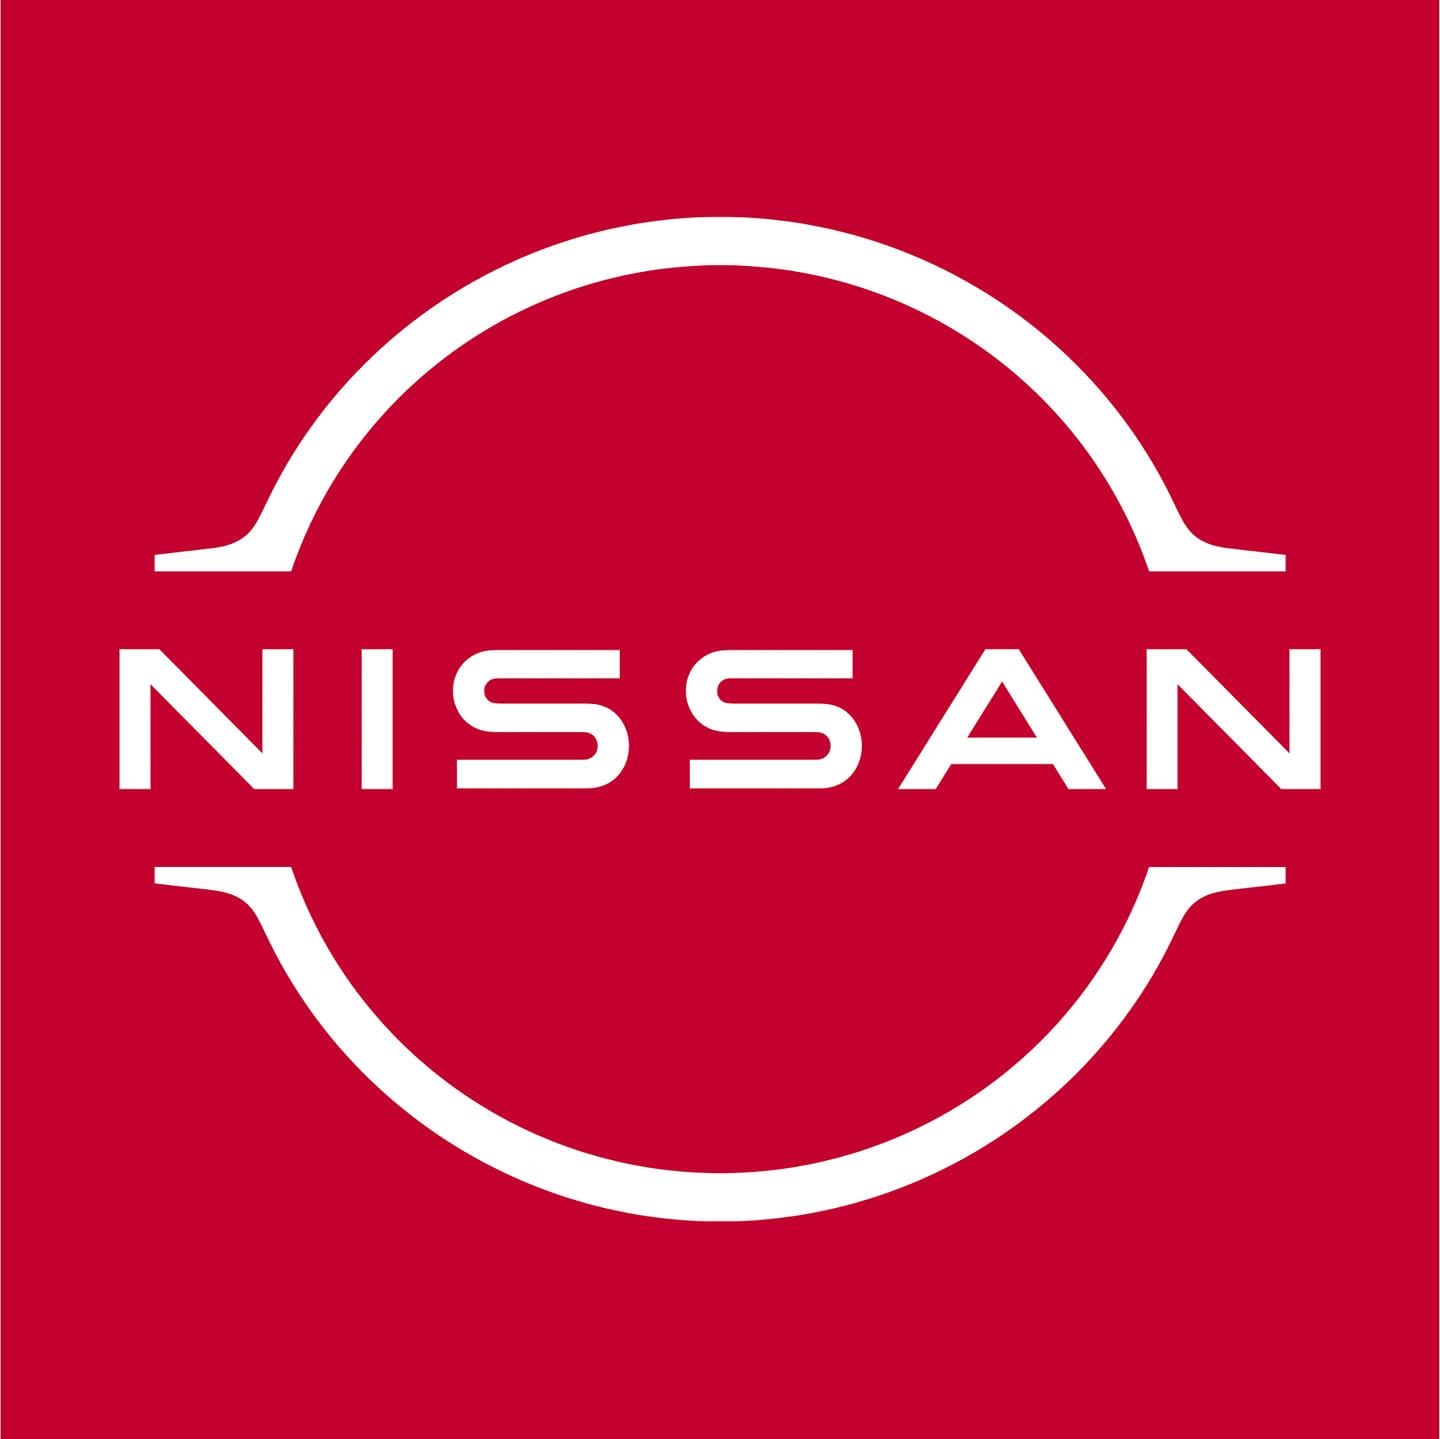 PRAMUKH NISSAN NAVSARI - Logo